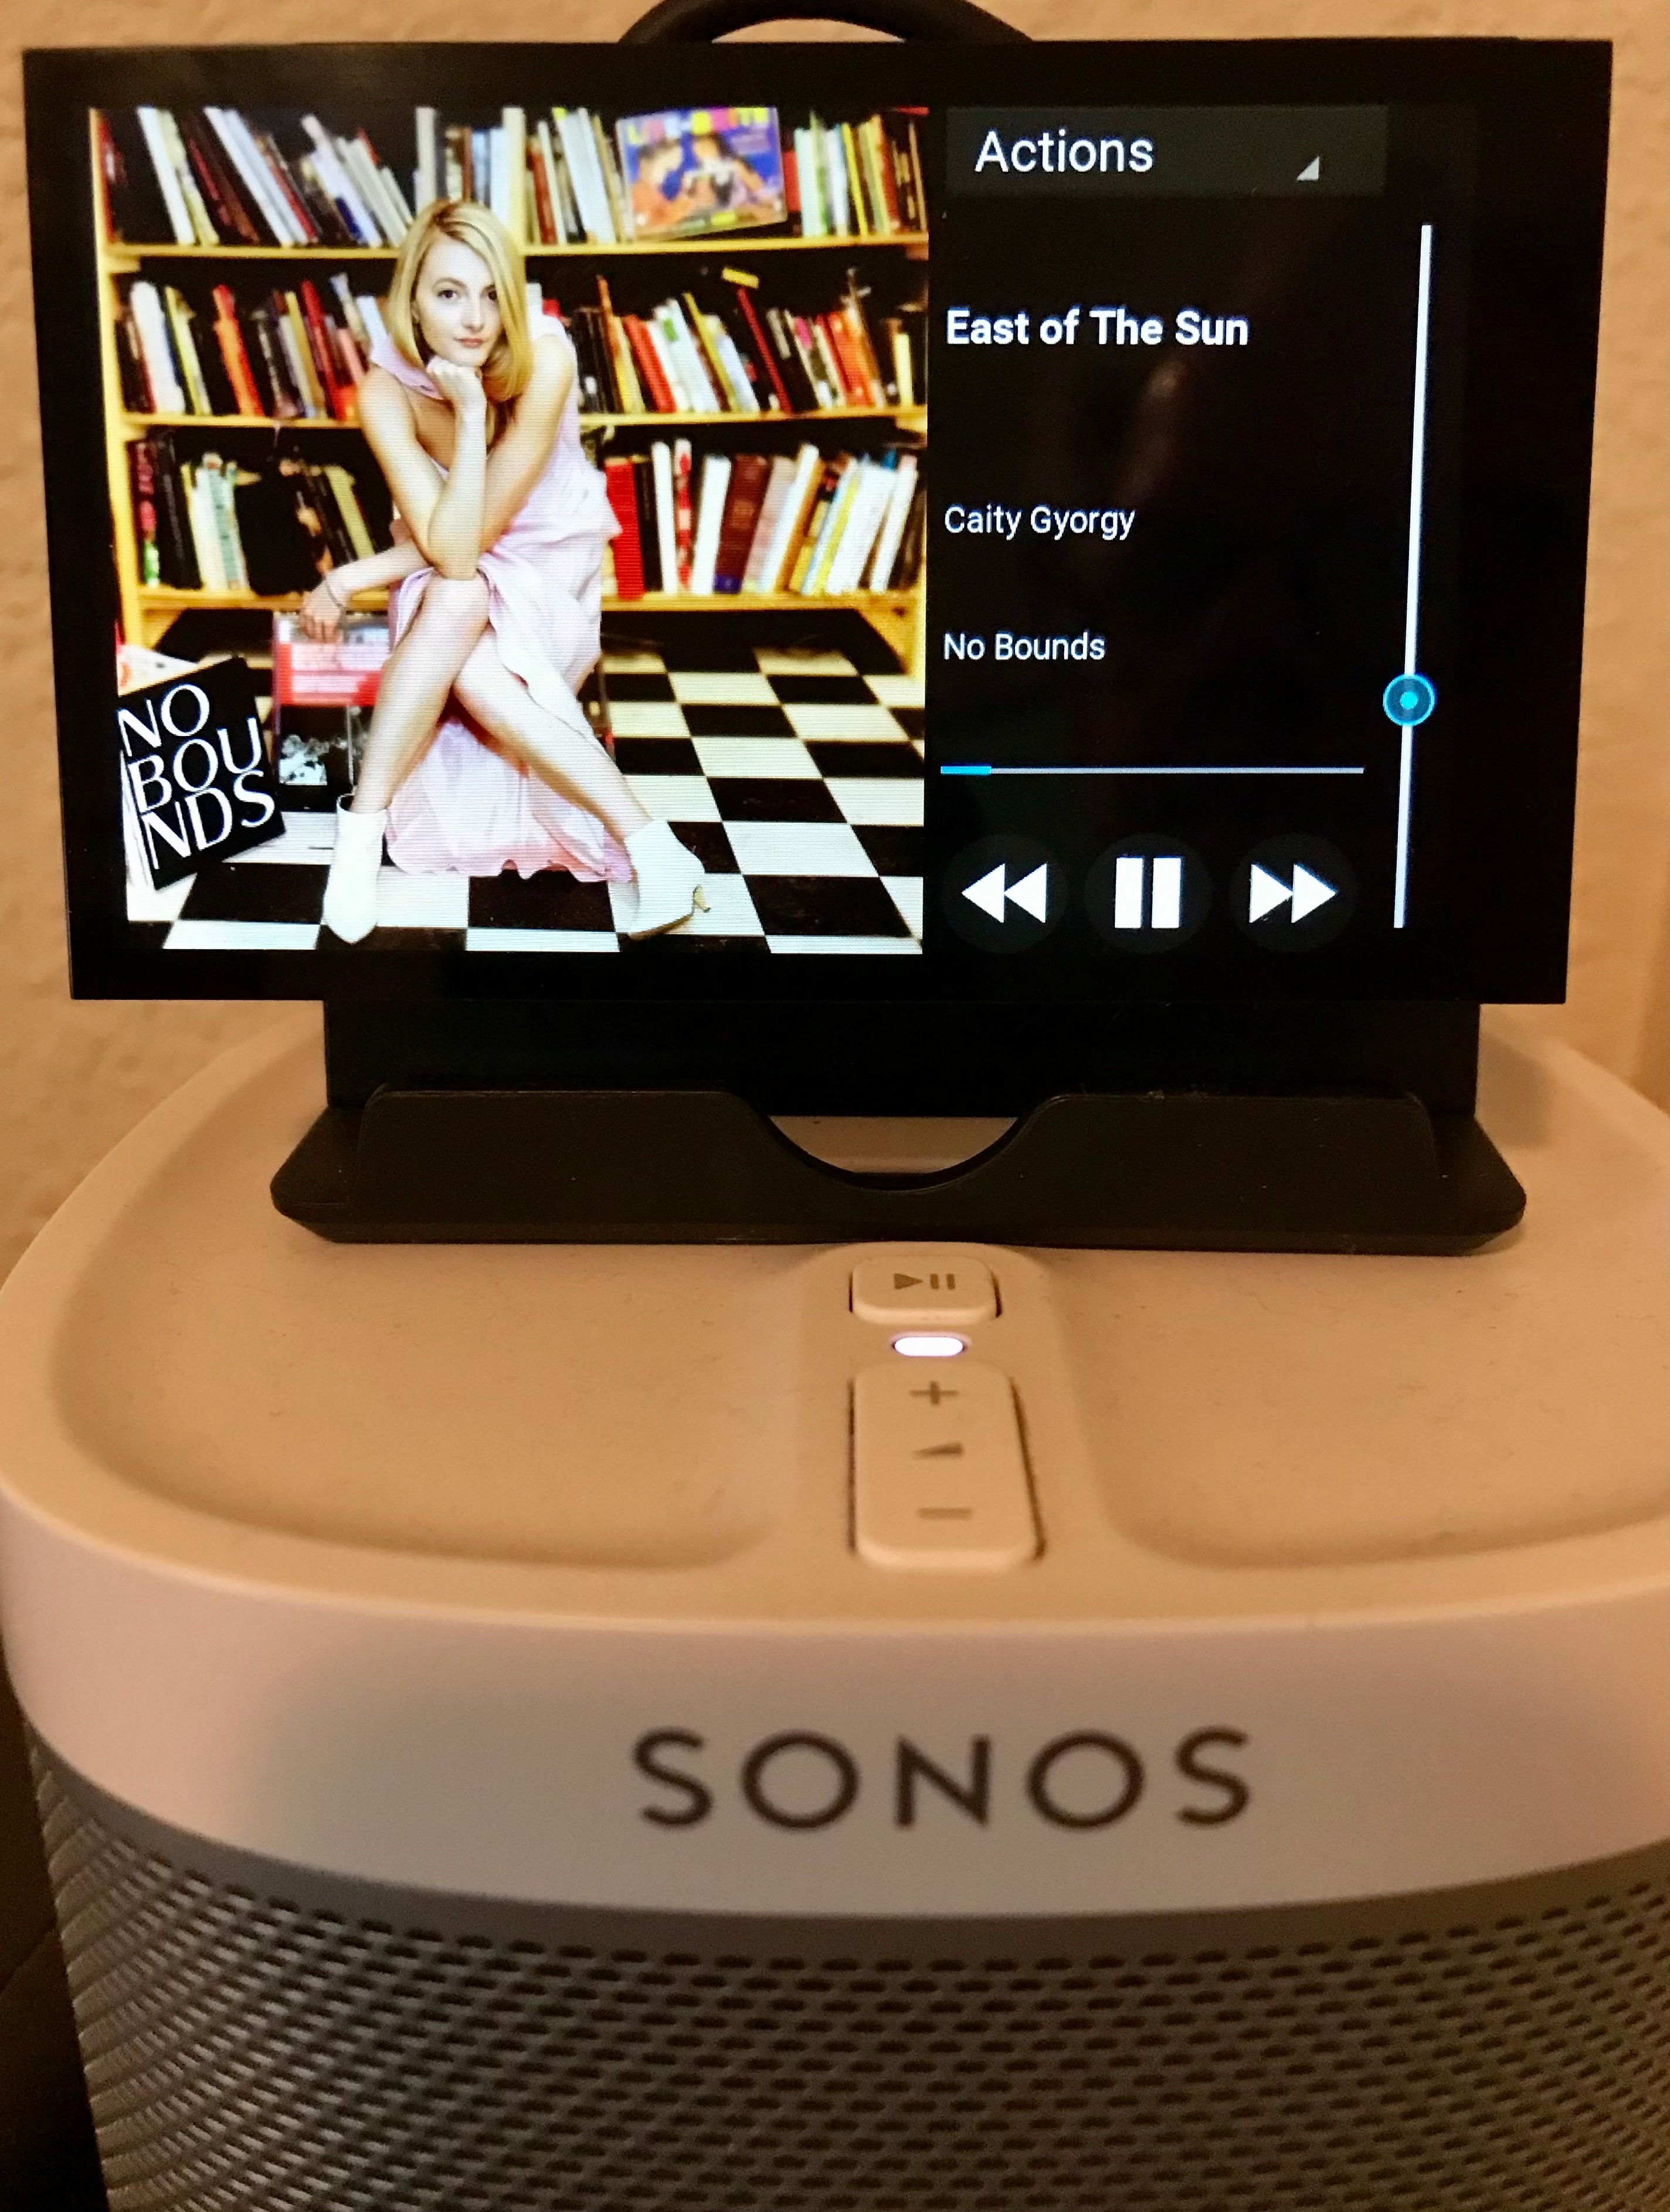 Morse kode Arbitrage Diverse Sonos Touchscreen Controller | Sonos Community